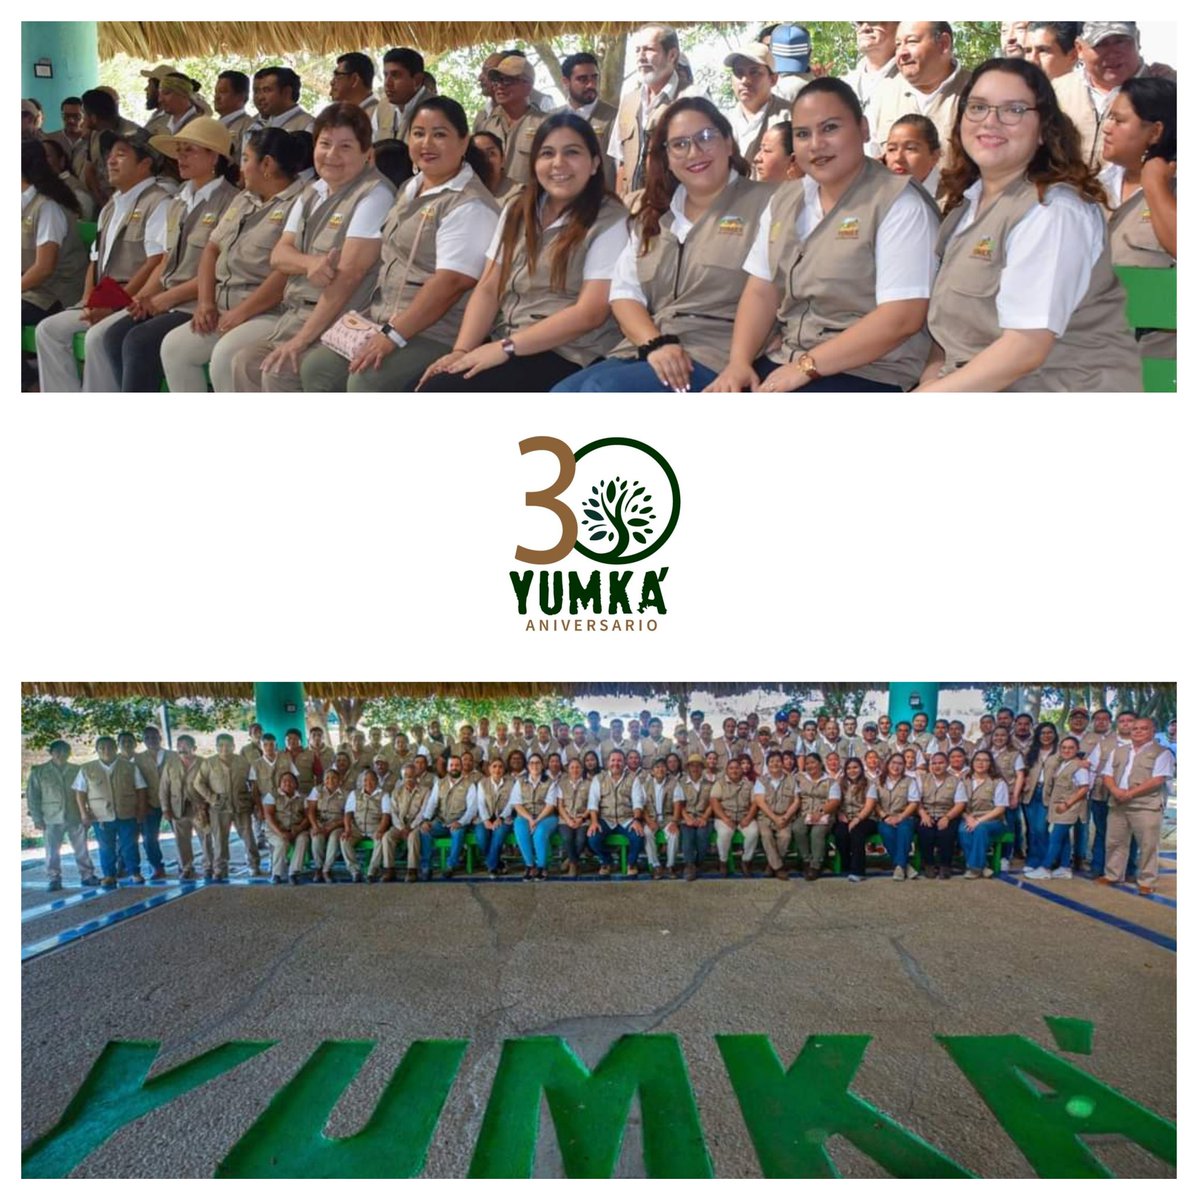 🌱  FELICIDADES YUMKA ANP @ANP_Yumka  por los primeros 30 Años como Centro de Interpretación y Convivencia con la Naturaleza. Con esencia a #Tabasco 👏
#ViveLaExperiencia